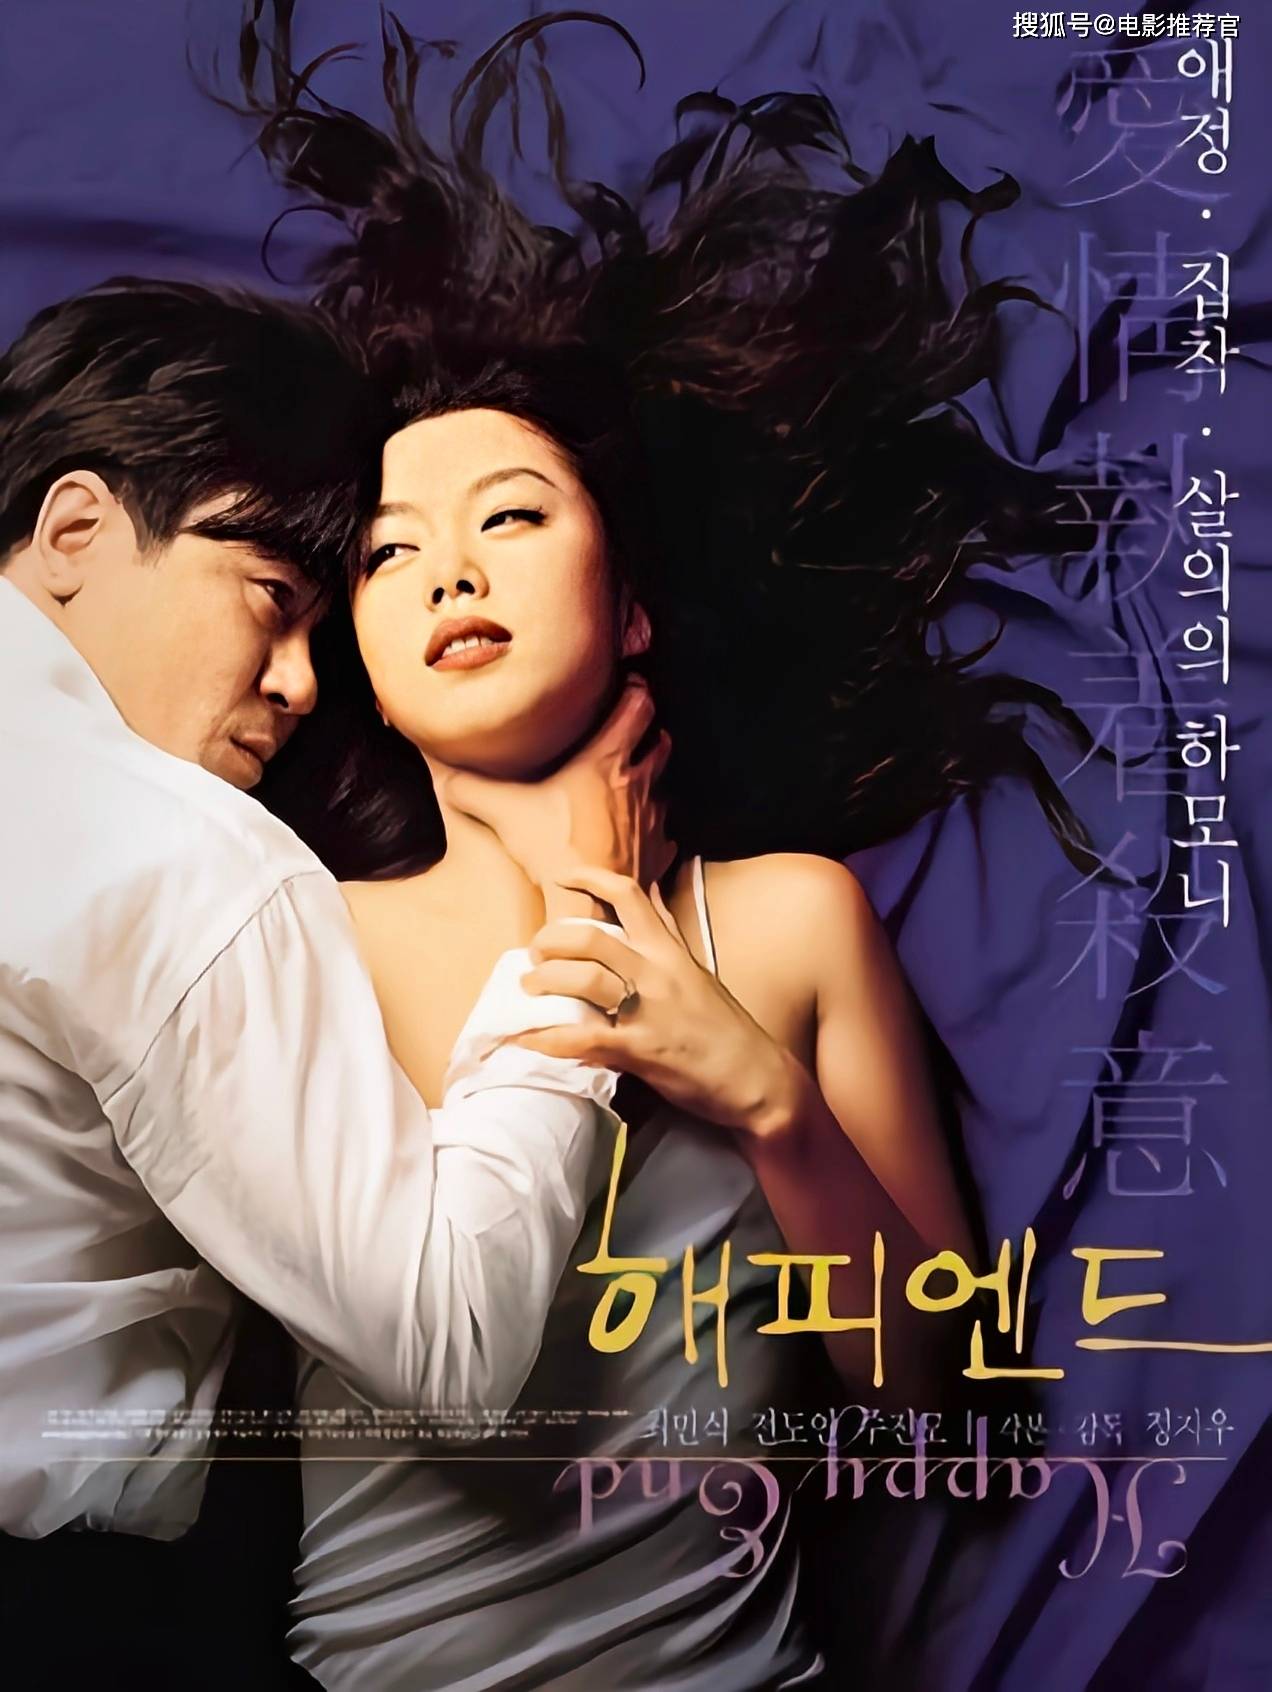 9语言:韩语地区:韩国片长:99分钟类型:剧情/爱情/伦理上映:1999